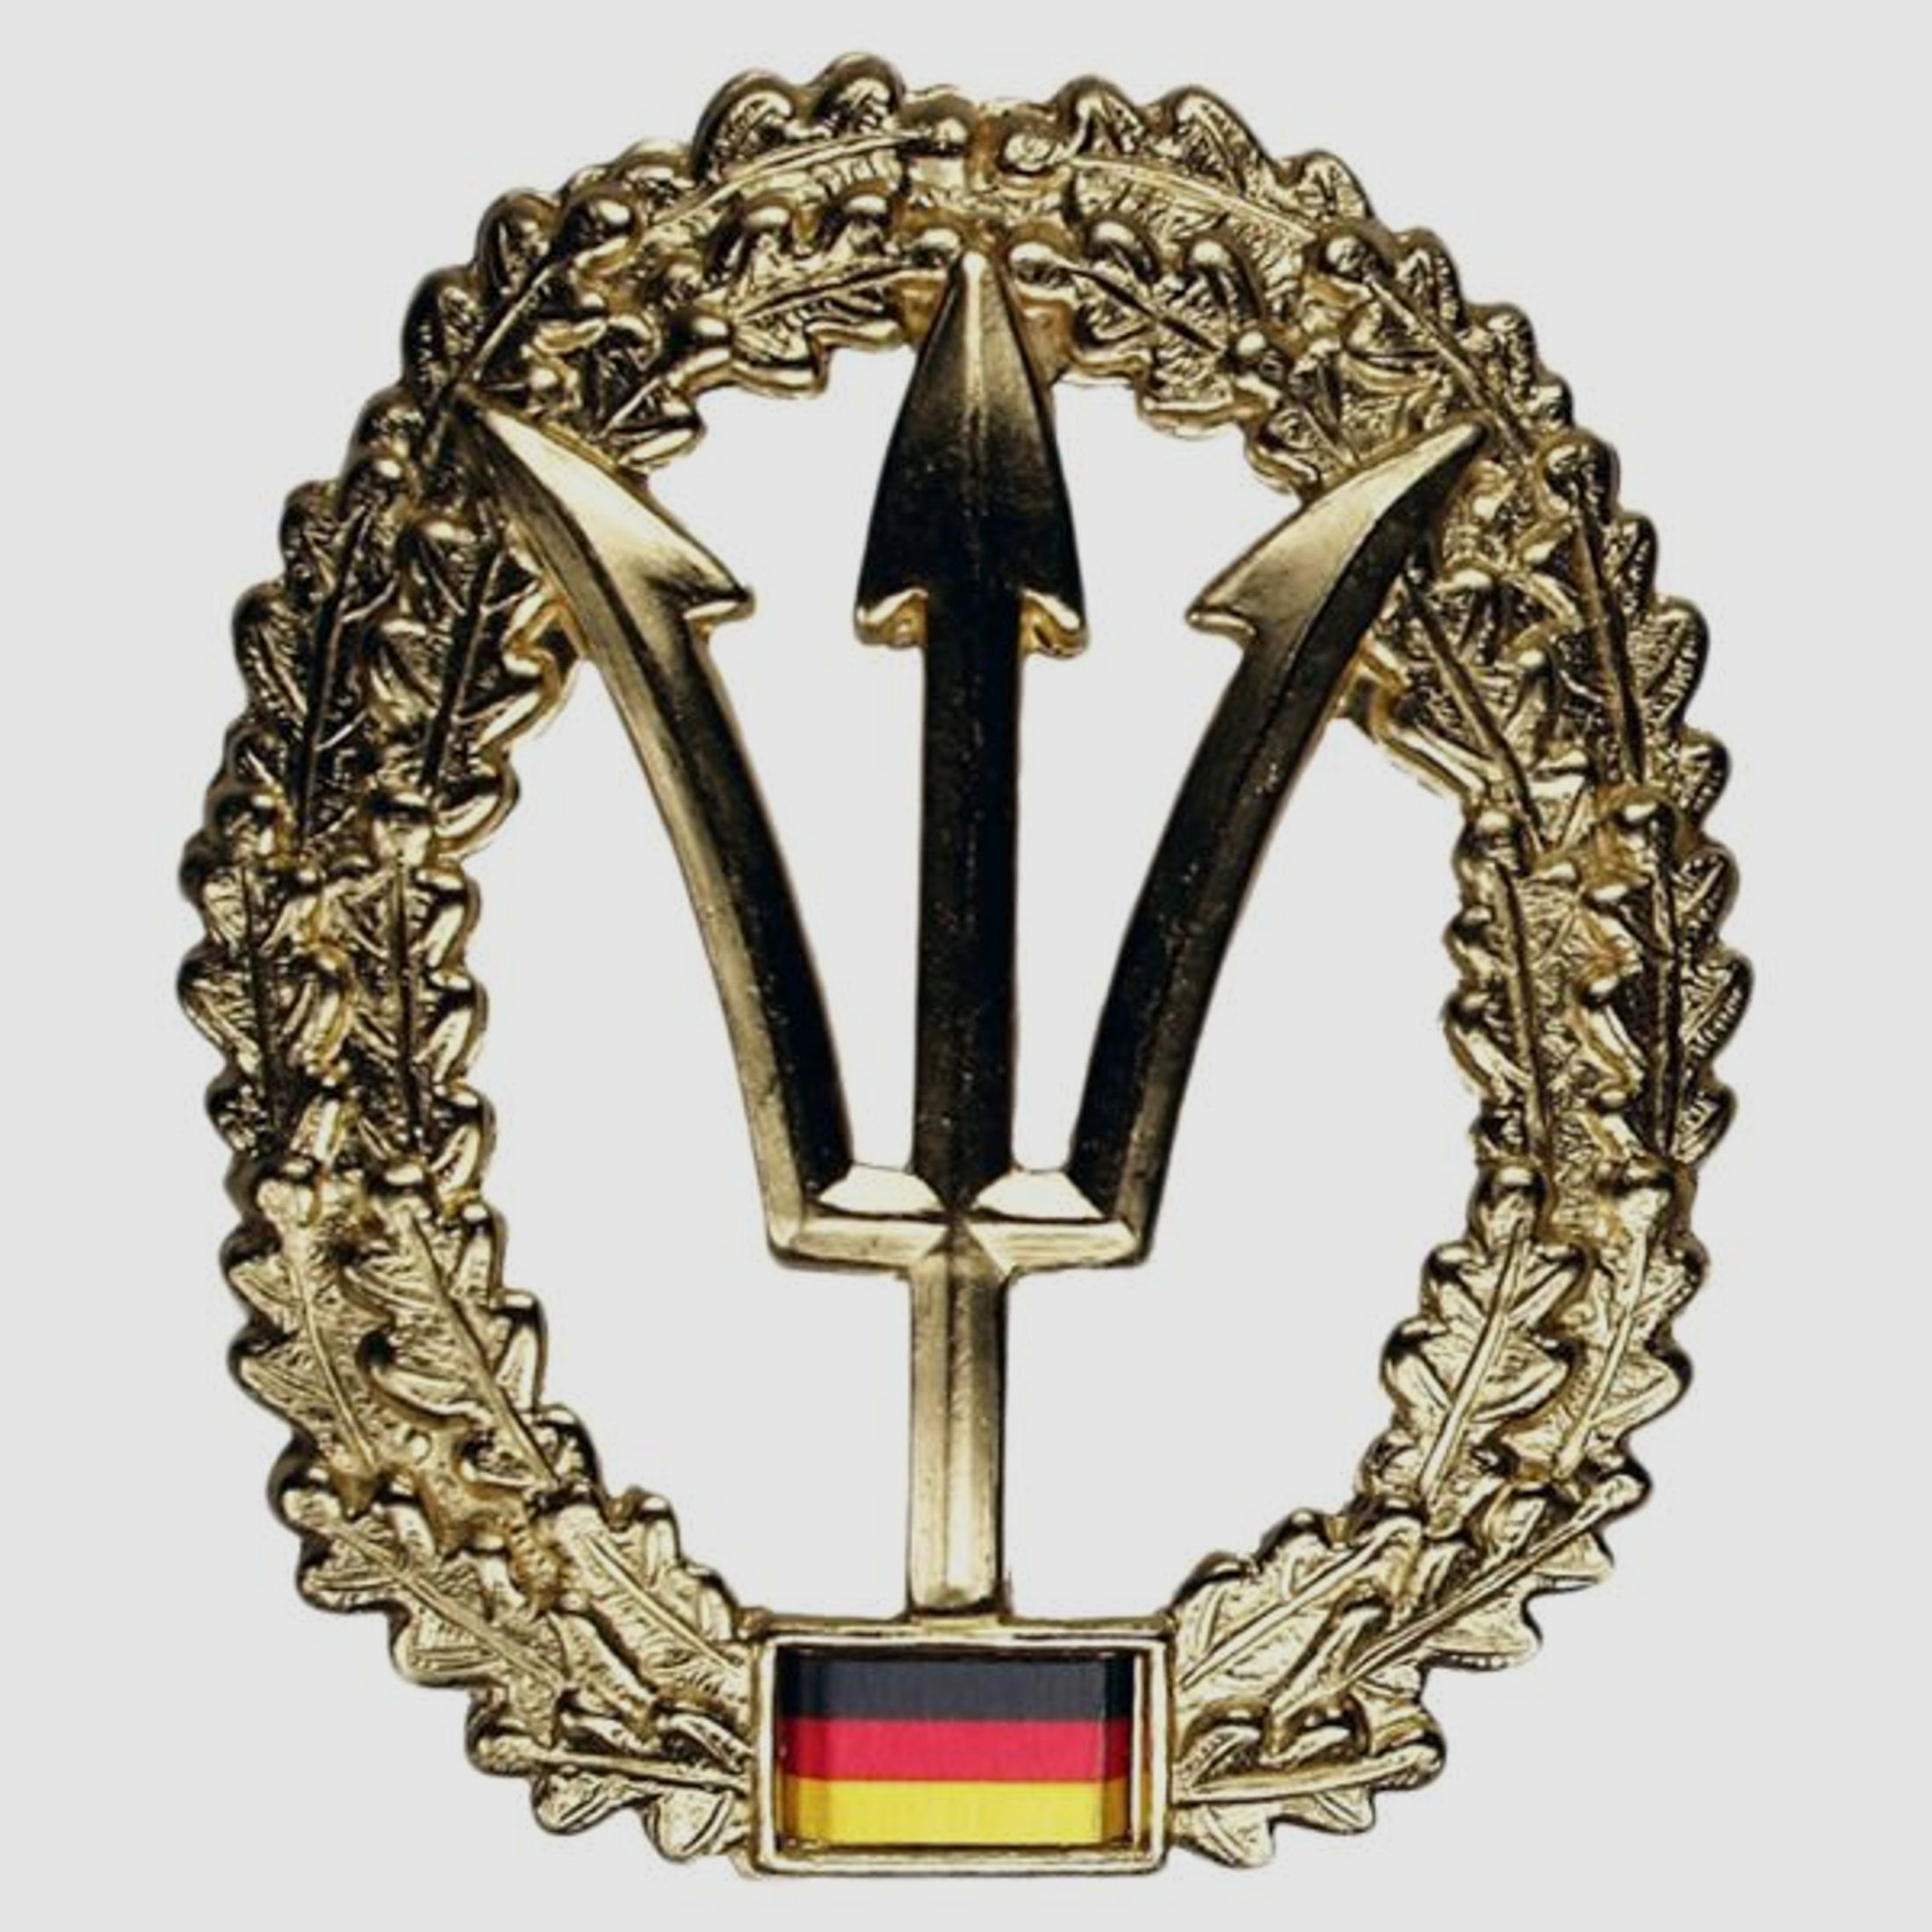 Fritzsch Abzeichen BW Barett Kommando Spezialkräfte Marine